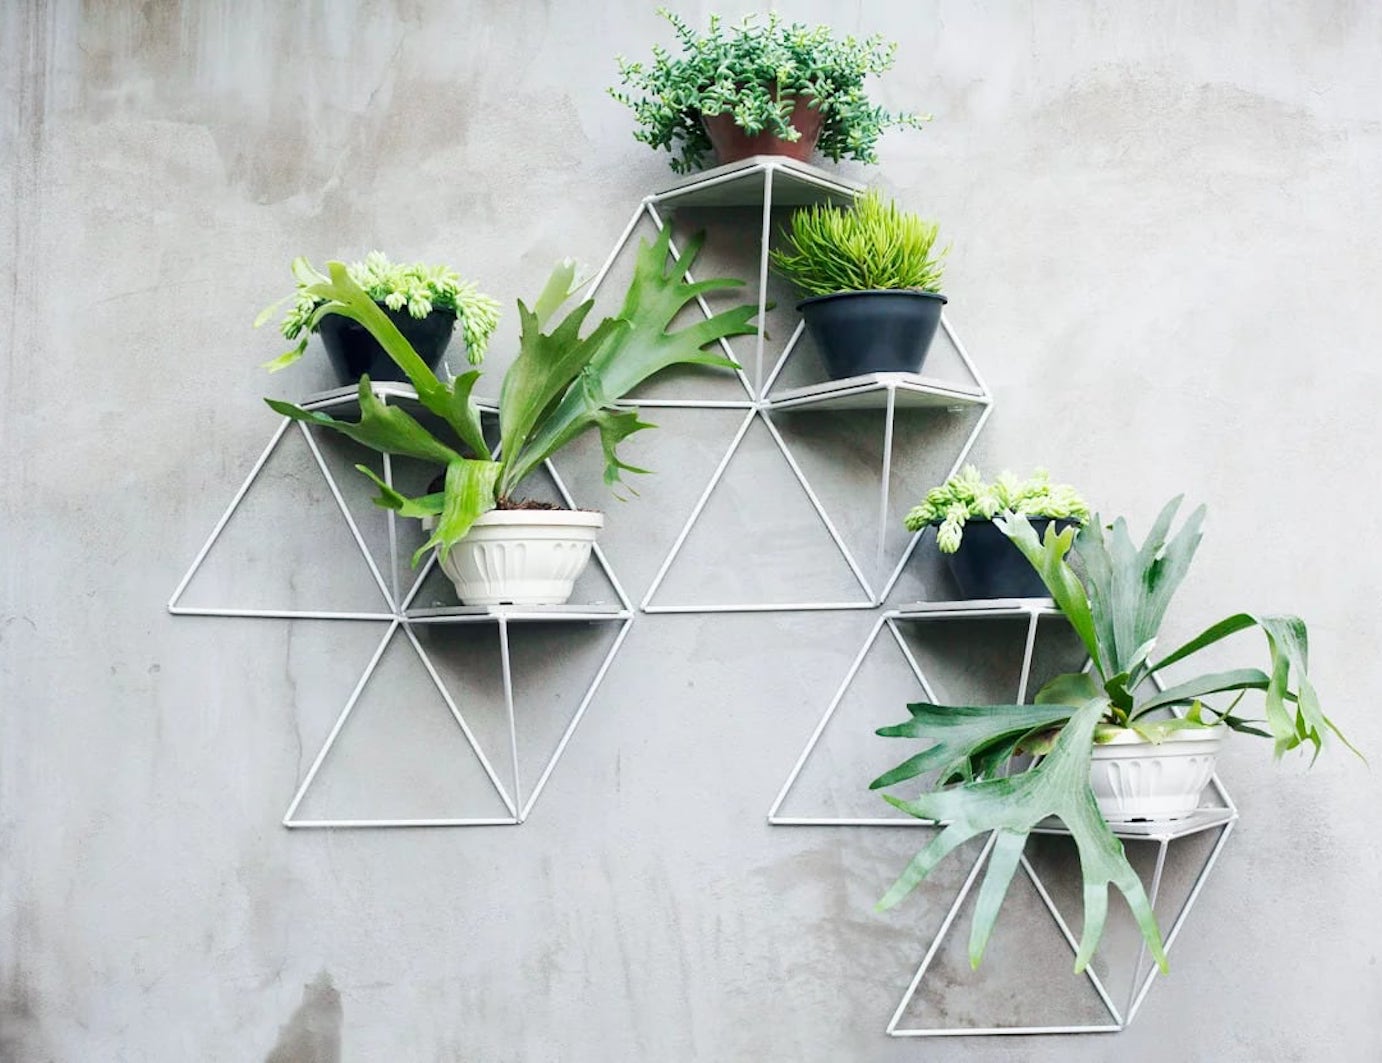 Estudio Parrado Garden Modules are the modern way to hang houseplants